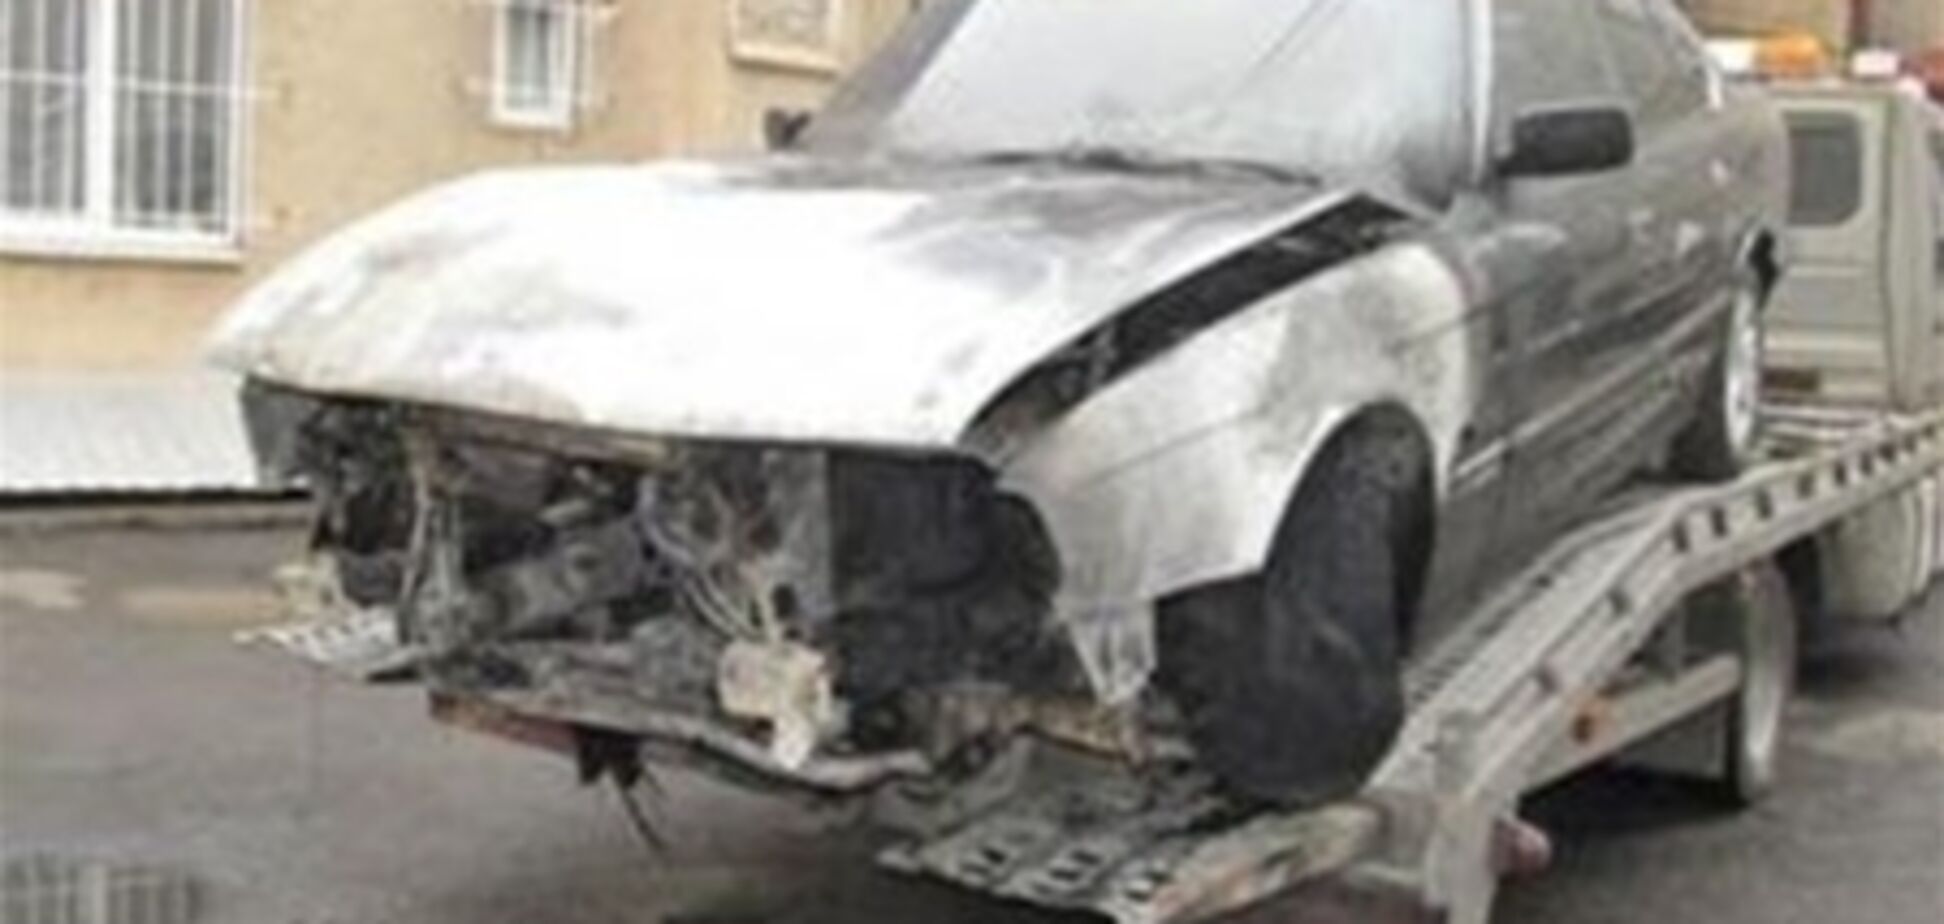 В Ужгороде сожгли автомобиль судьи